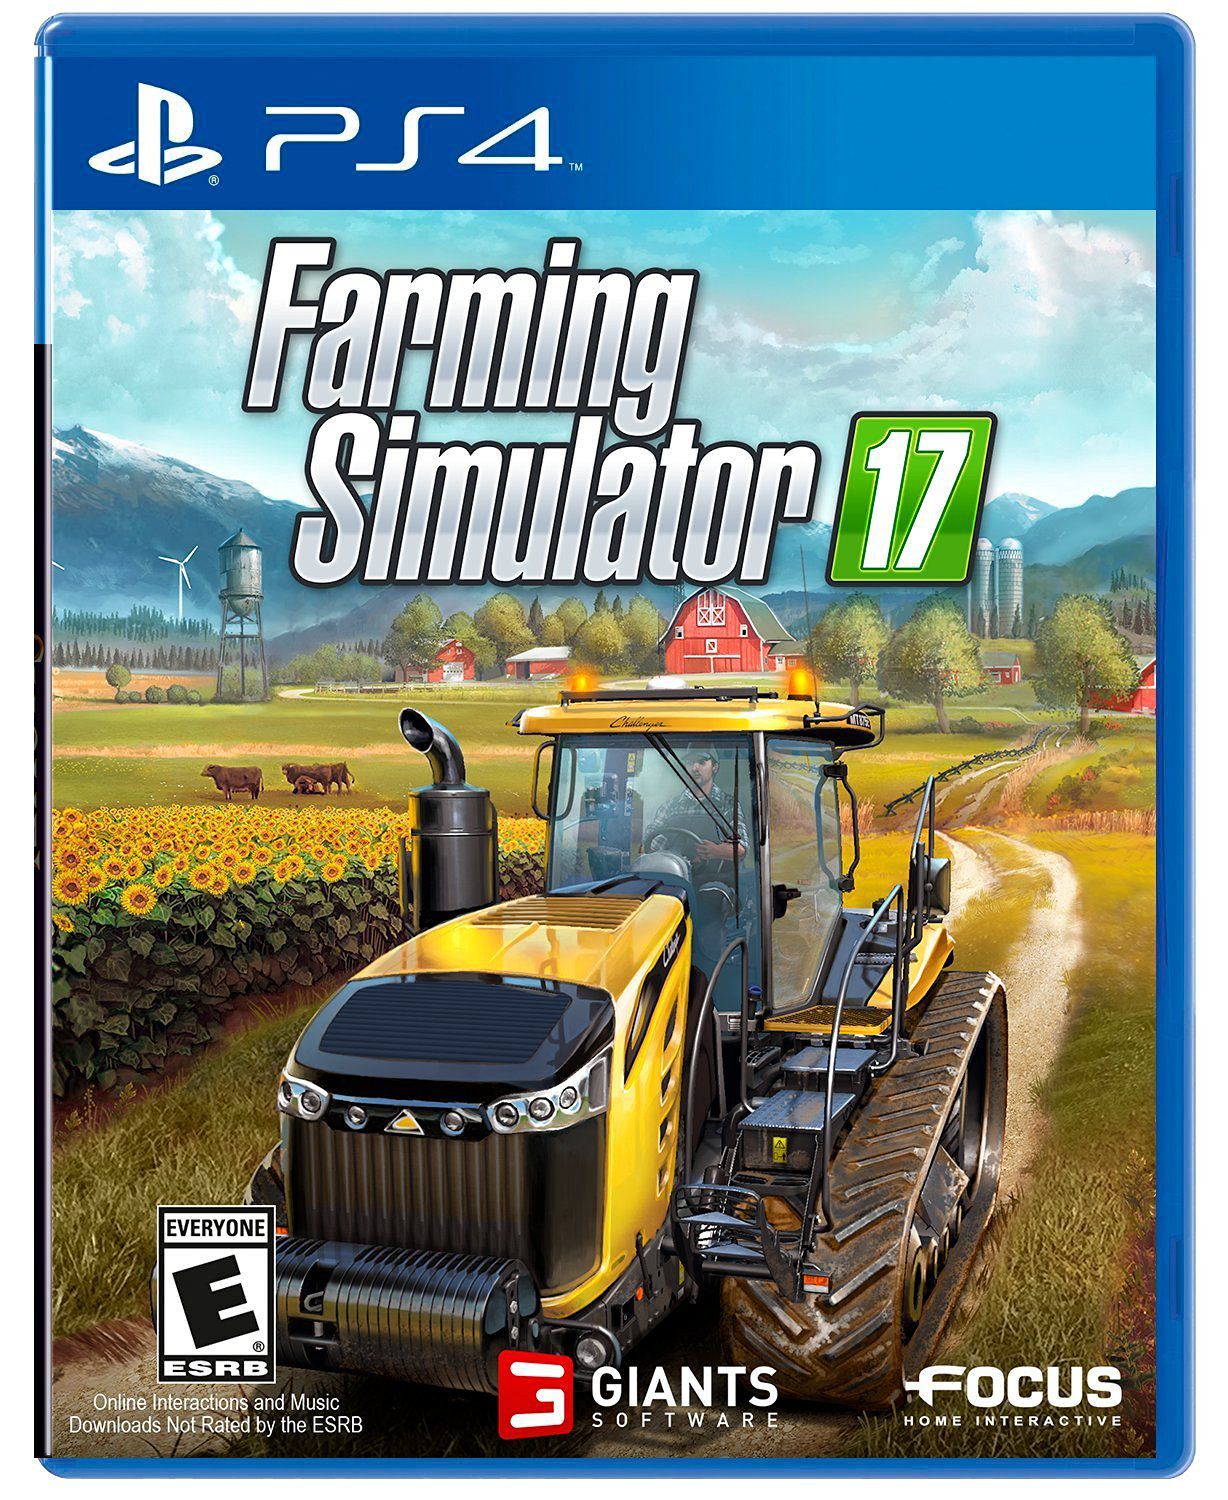 Jogo Farming Simulator 17 (Platinum Edition) - PS4 em Promoção